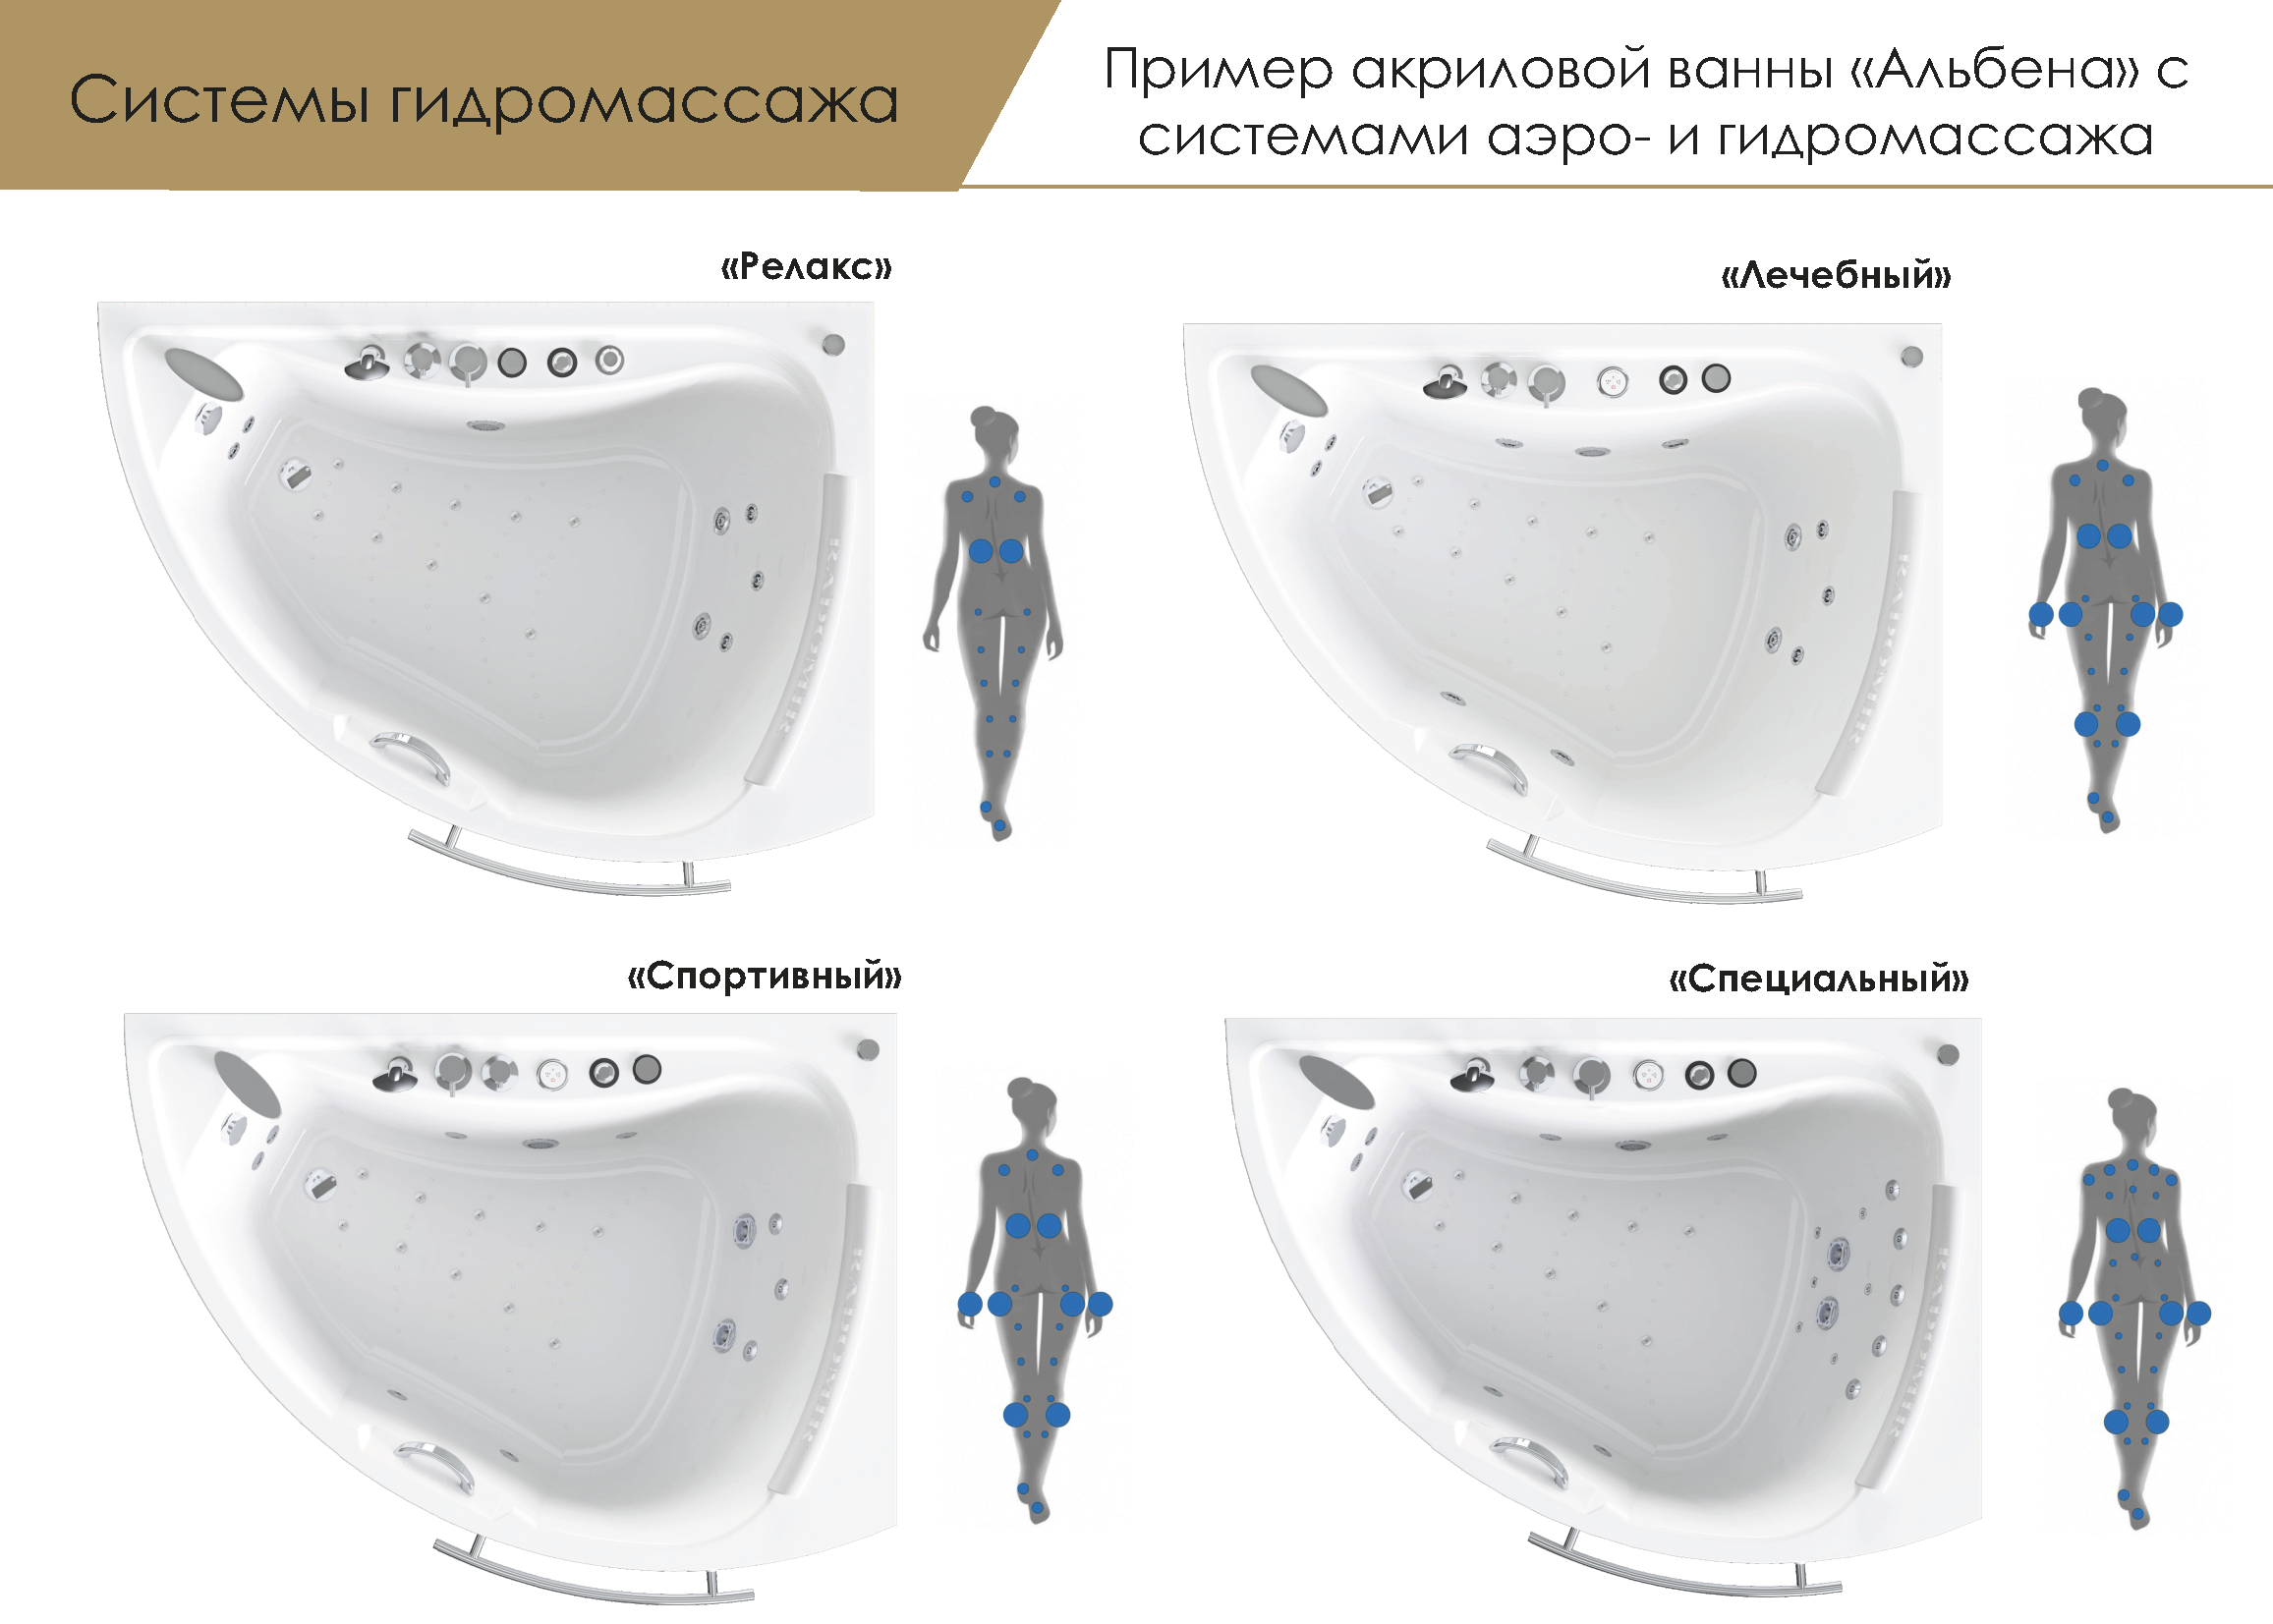 Гидромассажная ванна является очень полезным и приятным изобретением Однако в случае поломок требуется ремонт джакузи Иногда выполнить его можно